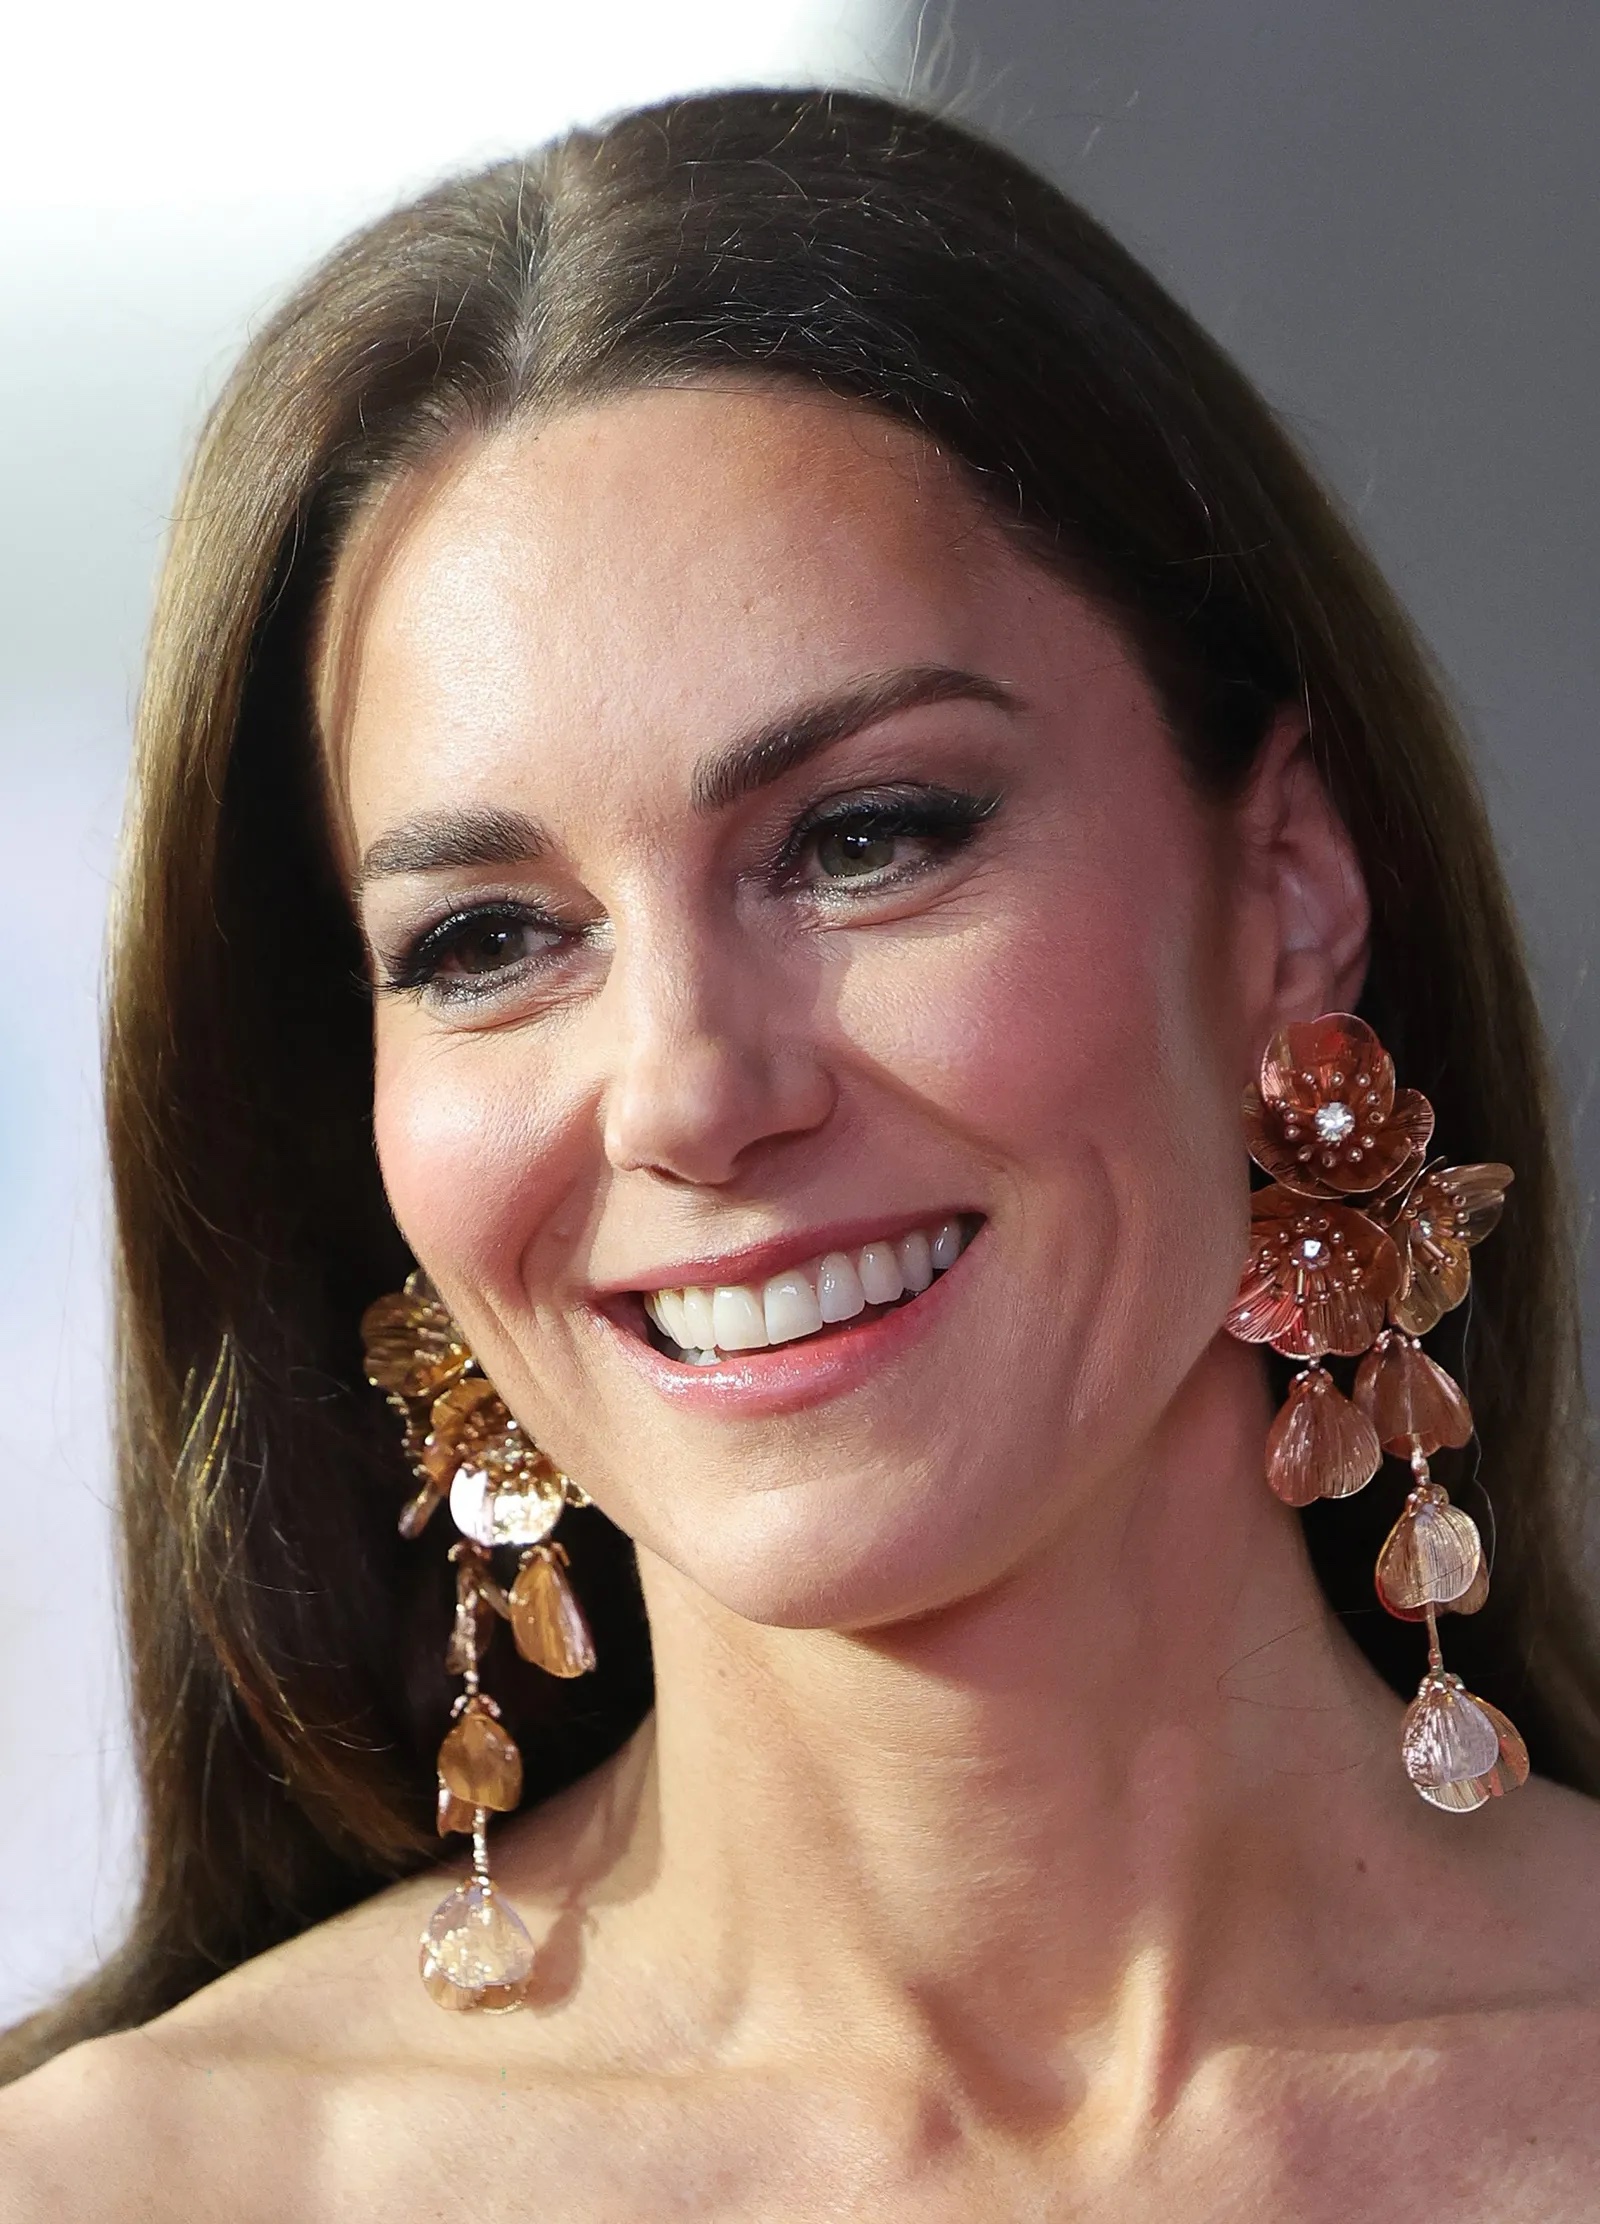 Sin embargo, las miradas de las expertas en moda repararon inmediatamente en sus orejas. A su paso por la alfombra roja, Kate Middleton llevaba unos inmensos pendientes dorados que acabaran toda la atención. Unos pendientes XXL con un diseño floral de Zara.